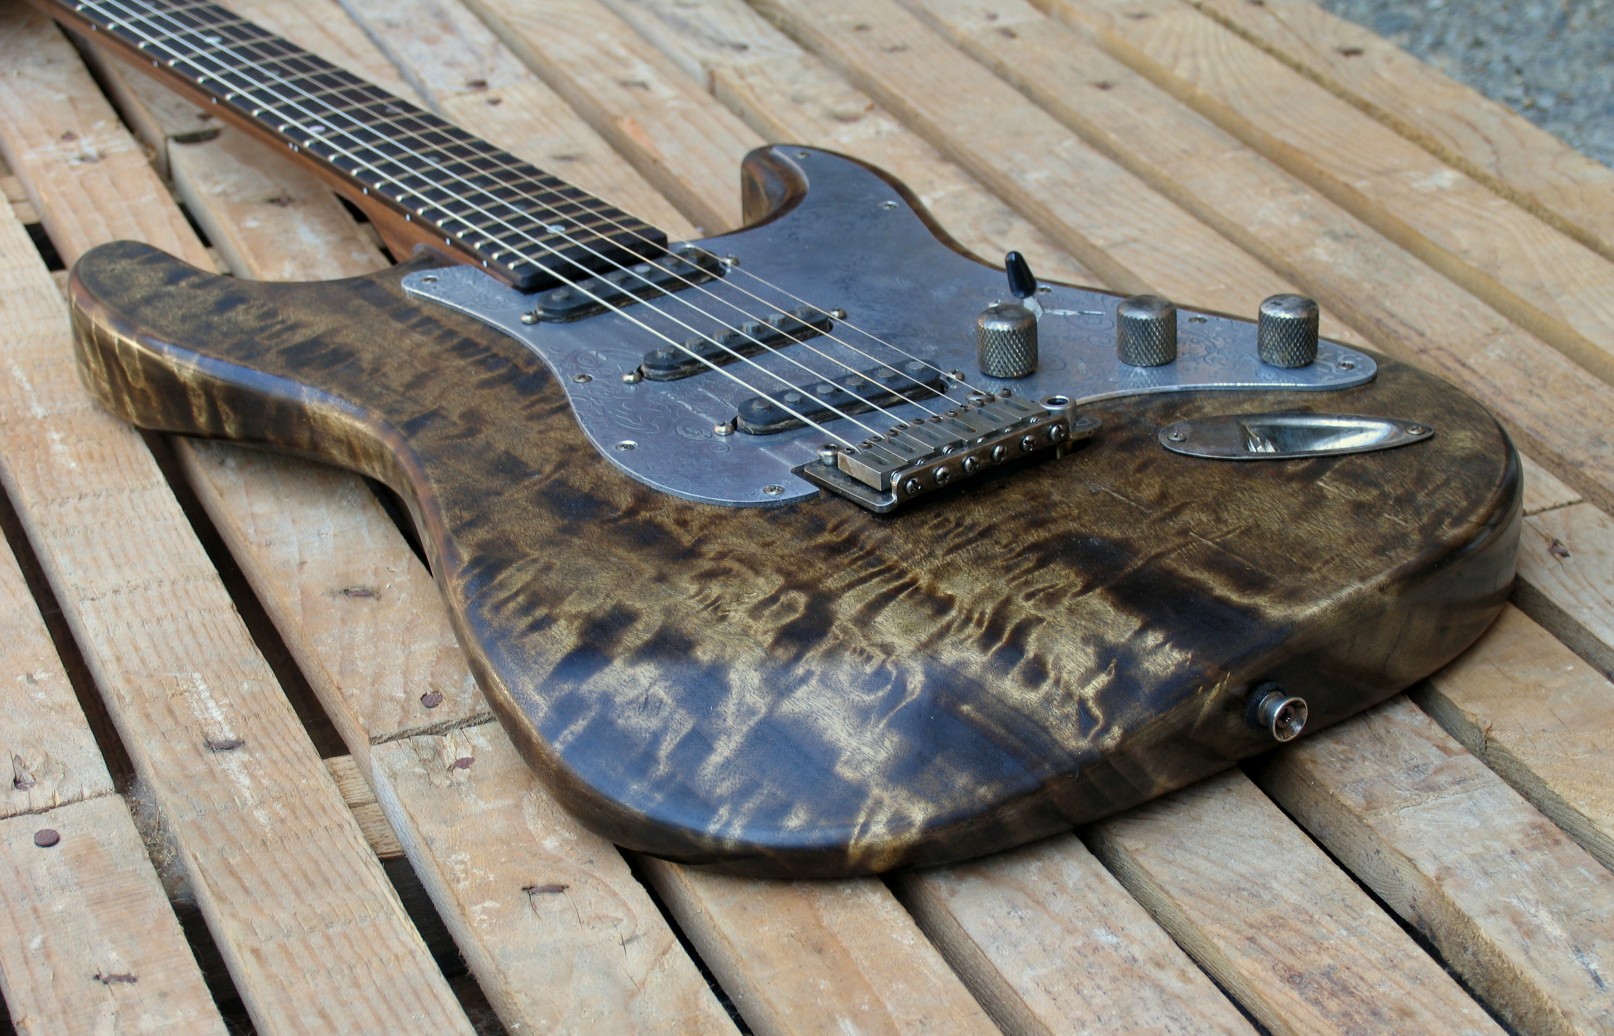 Body di una chitarra Stratocaster in pioppo